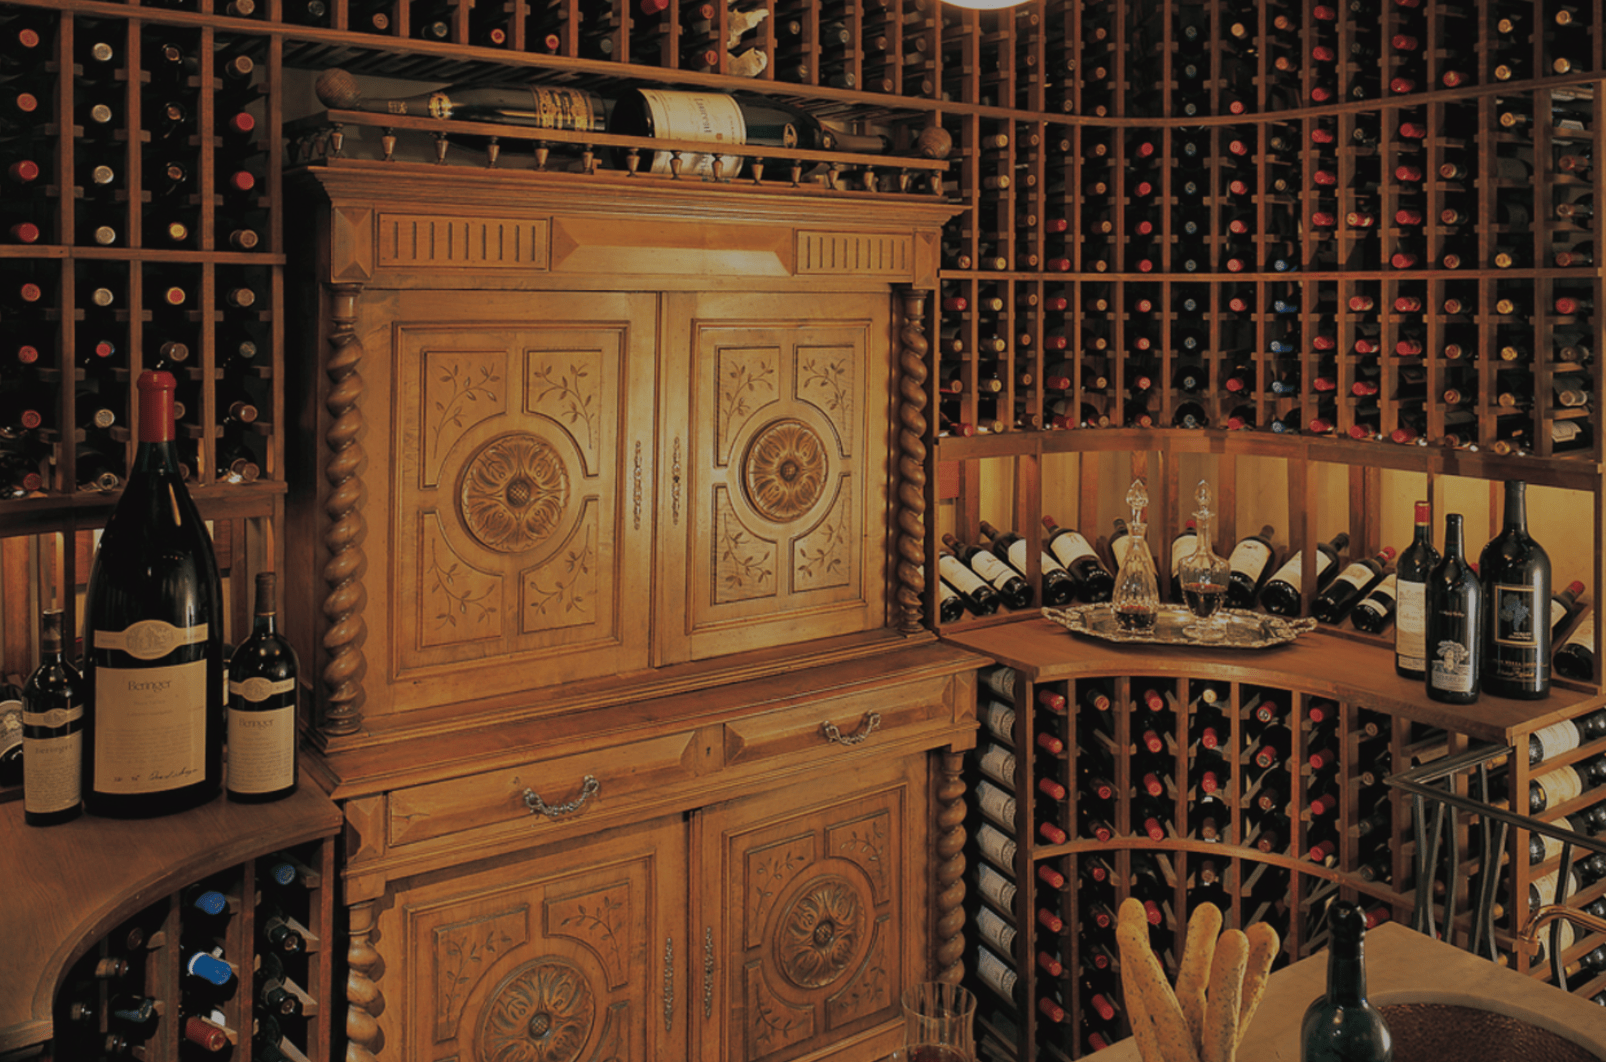 这个1400瓶的酒窖有定制的酒窖，包括角落里非常酷的弧形橱柜，头顶上的架子和品酒桌。